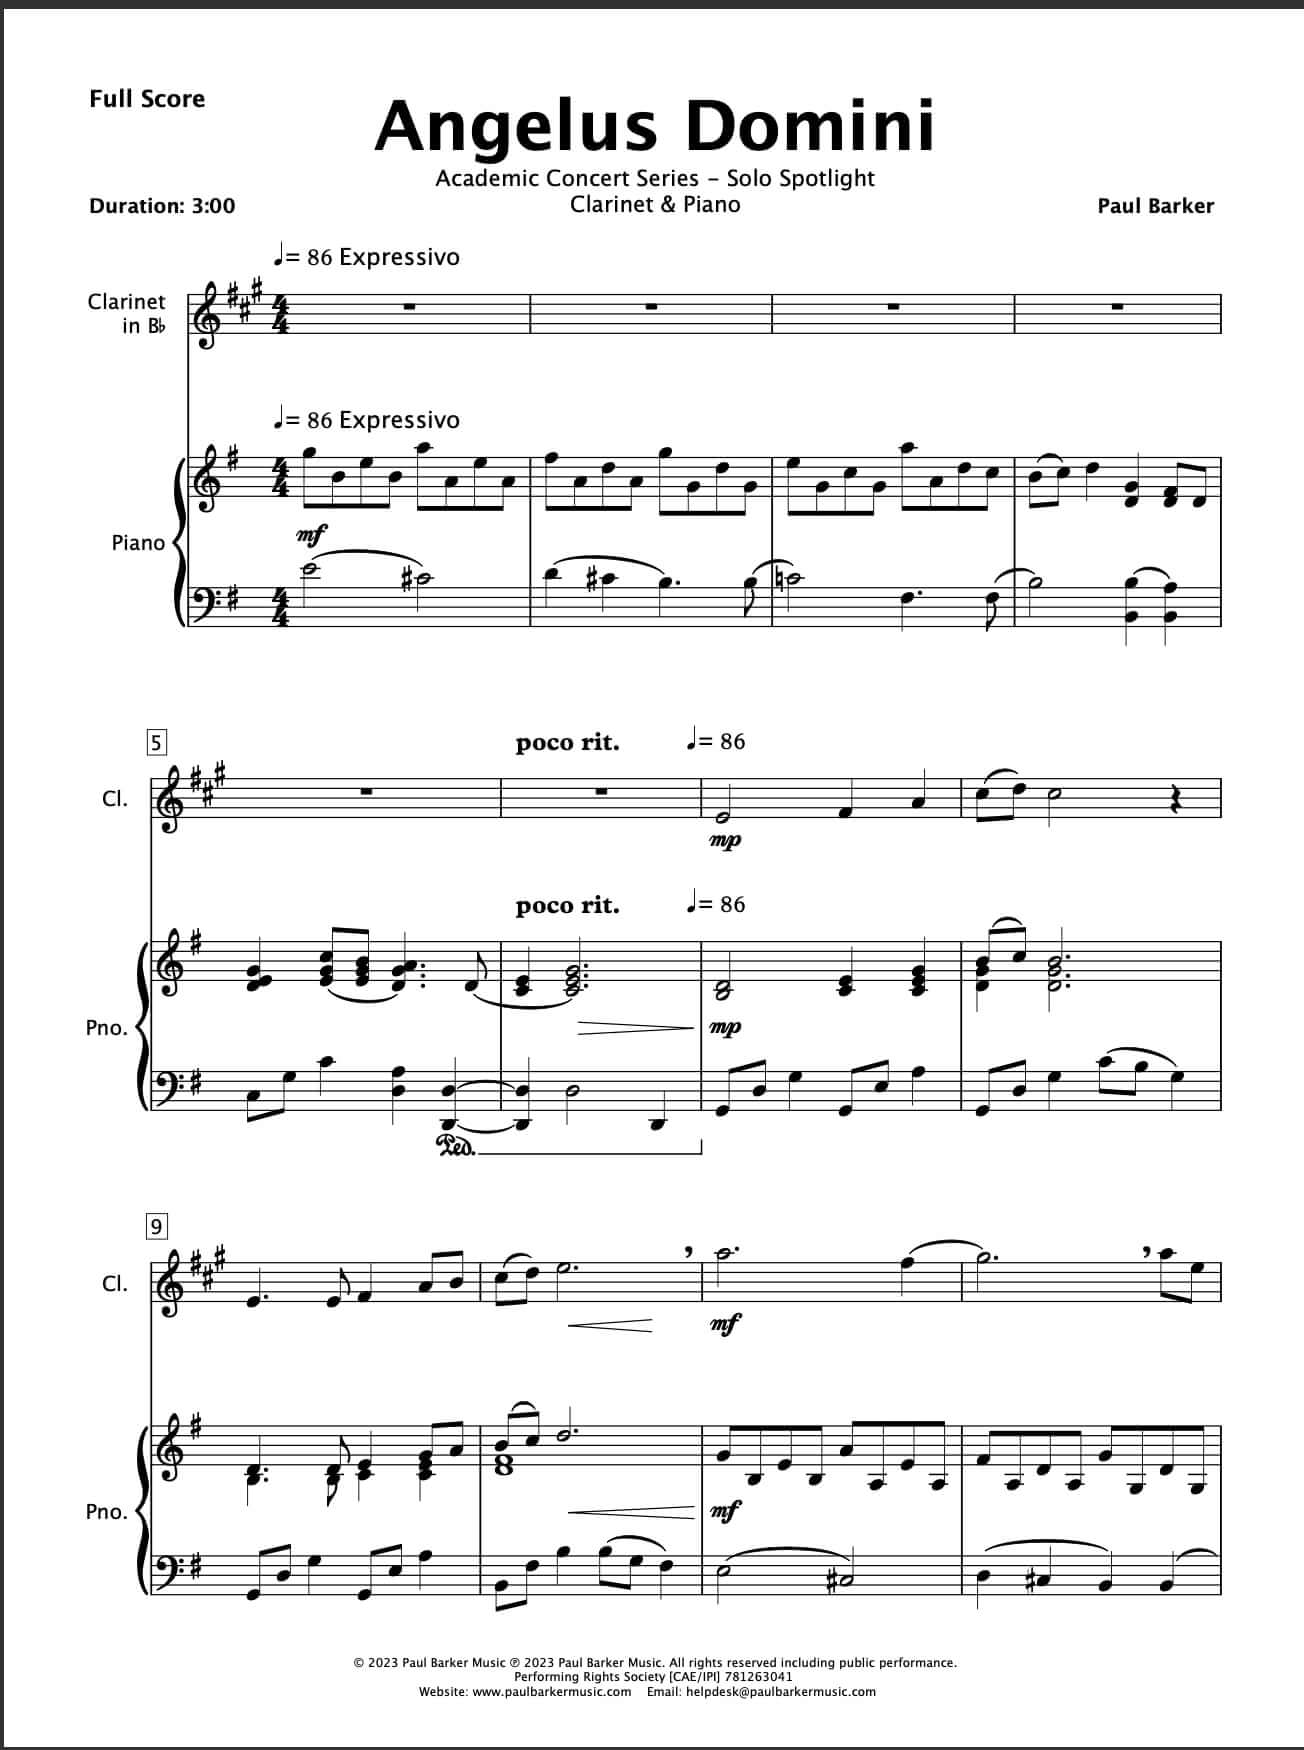 Angelus Dominie (Clarinet & Piano)